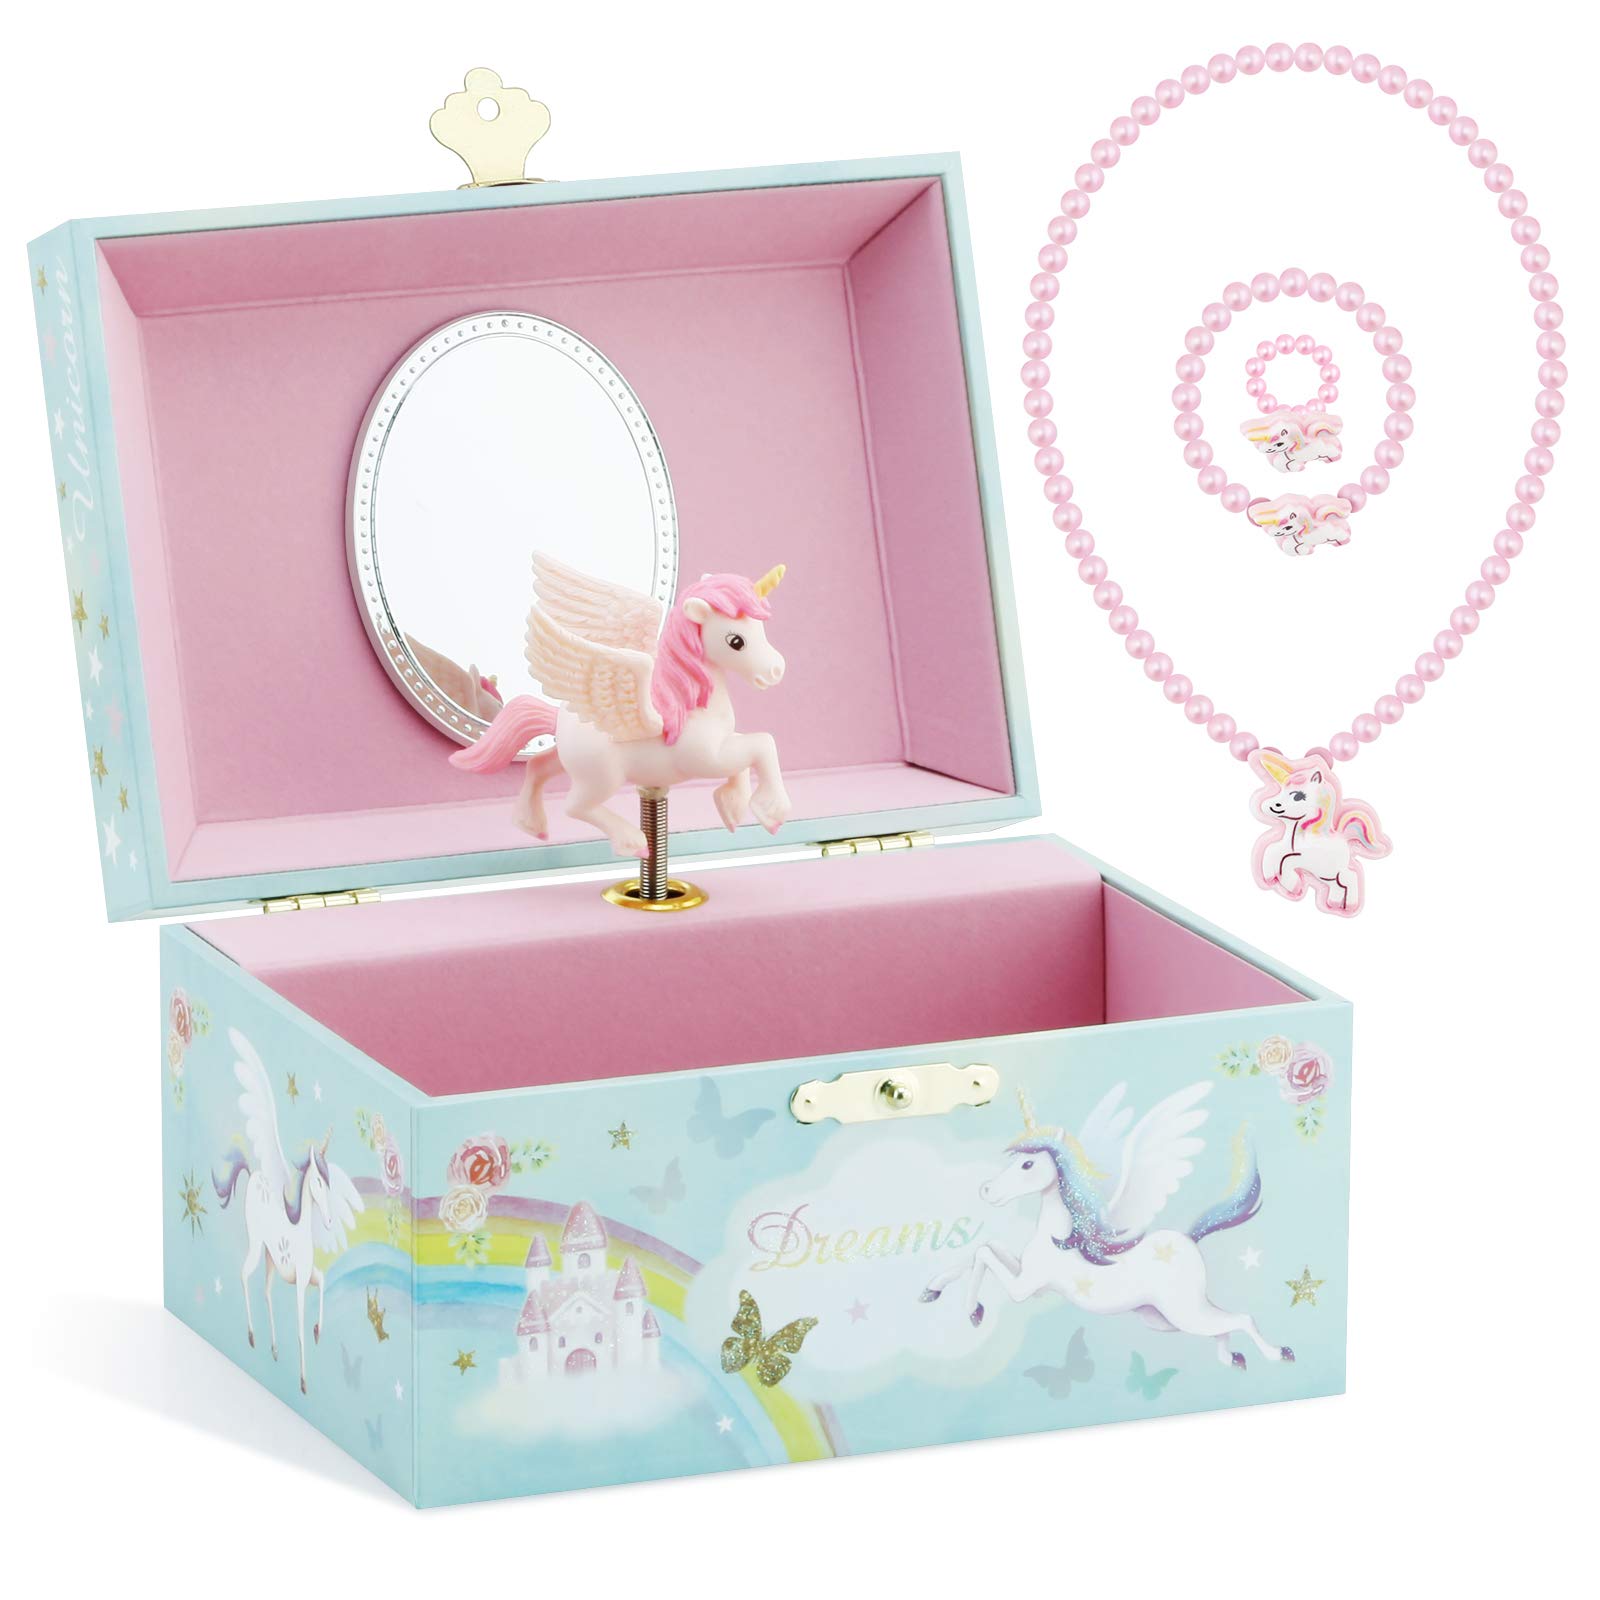 Custom Loftily Unicorn Children's Music Box Wooden Birthday Gift Jewelry Multifunctional Jewelry Storage Music Box